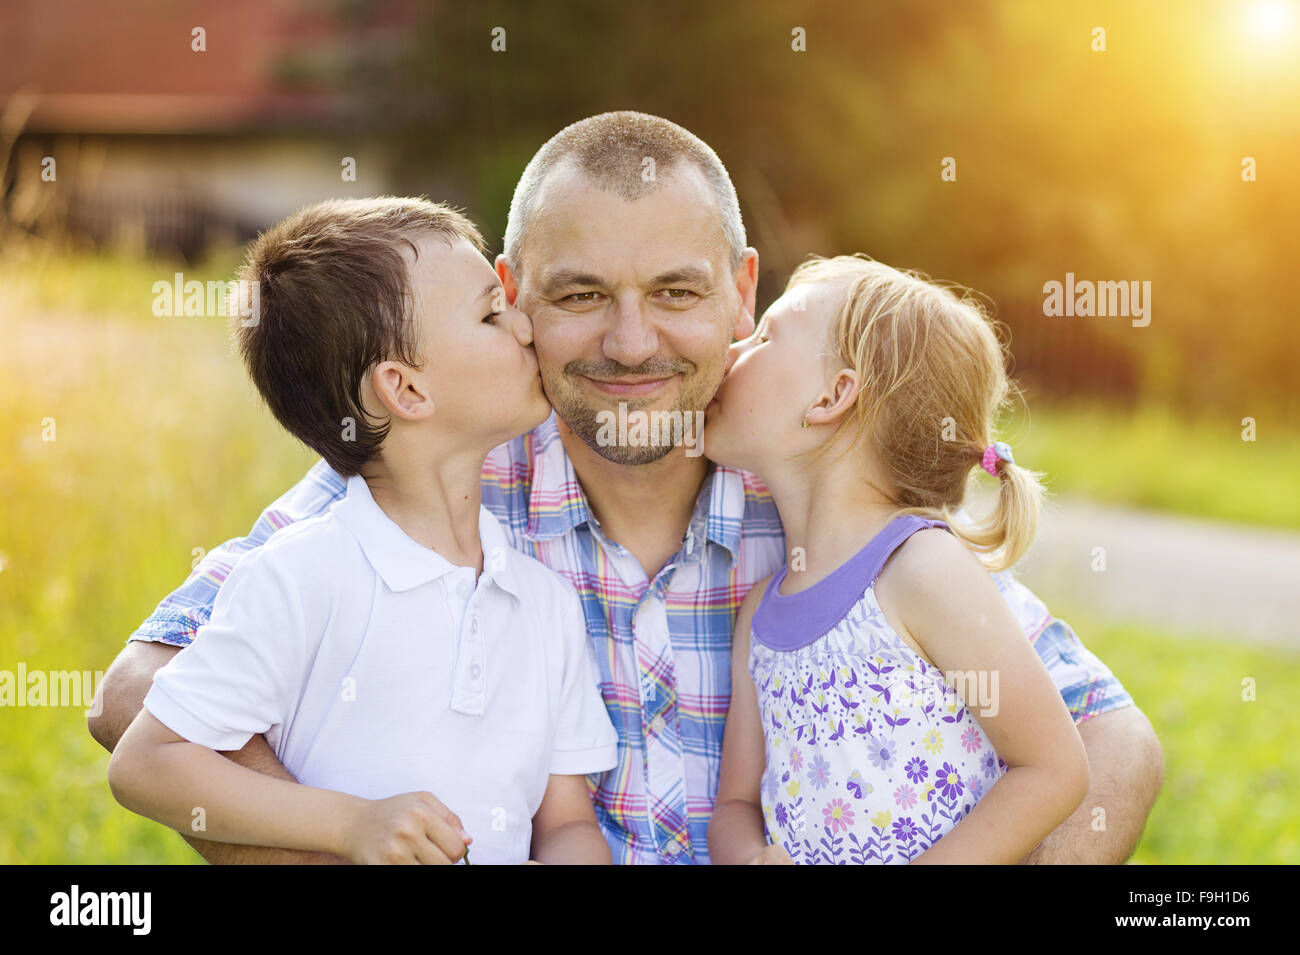 Vater mit seinen beiden Kindern gemeinsame Zeit draußen in der grünen Natur. Stockfoto